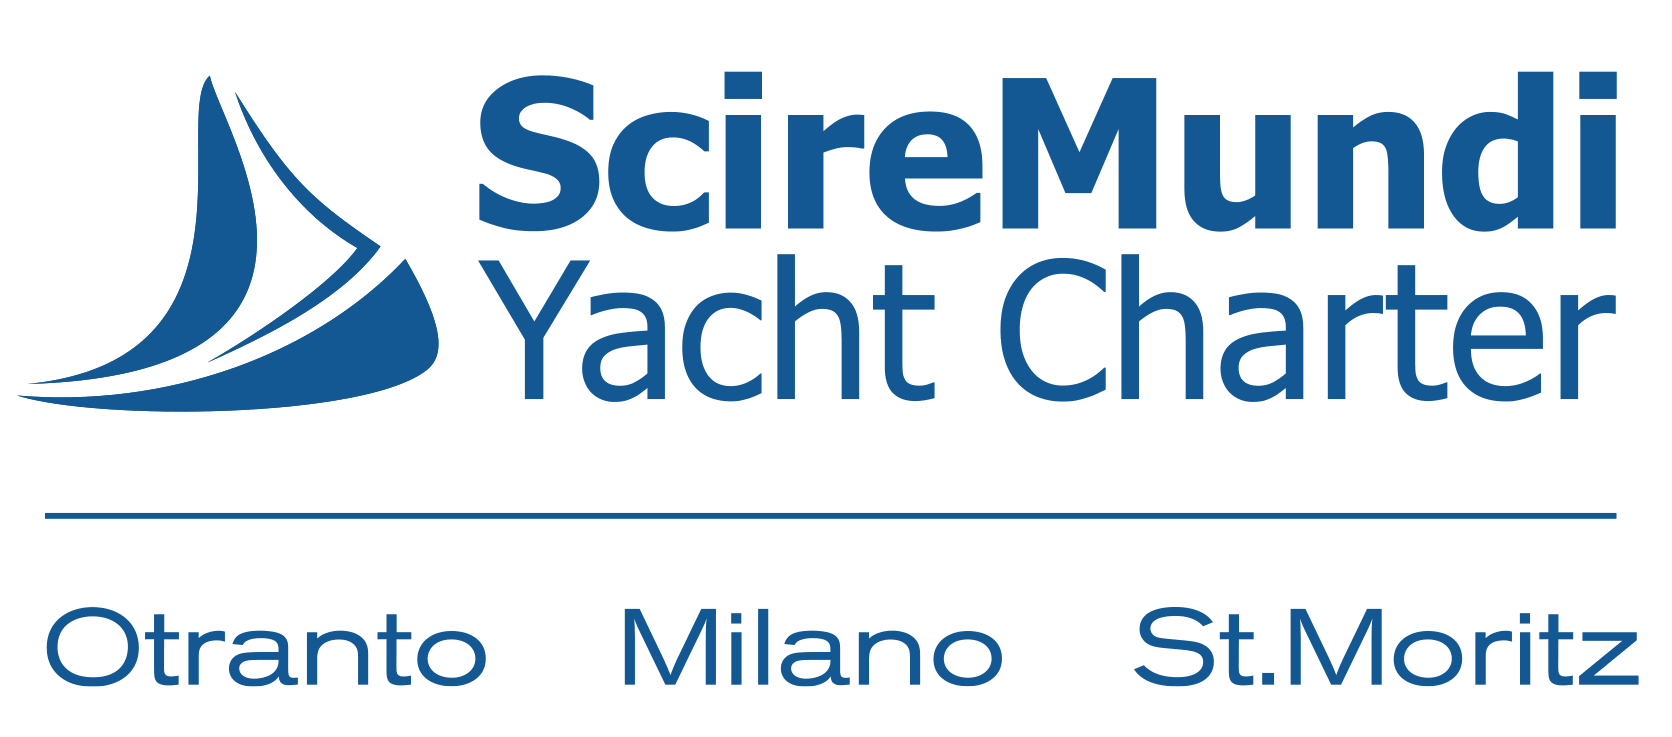 Sciremundi yacht charter